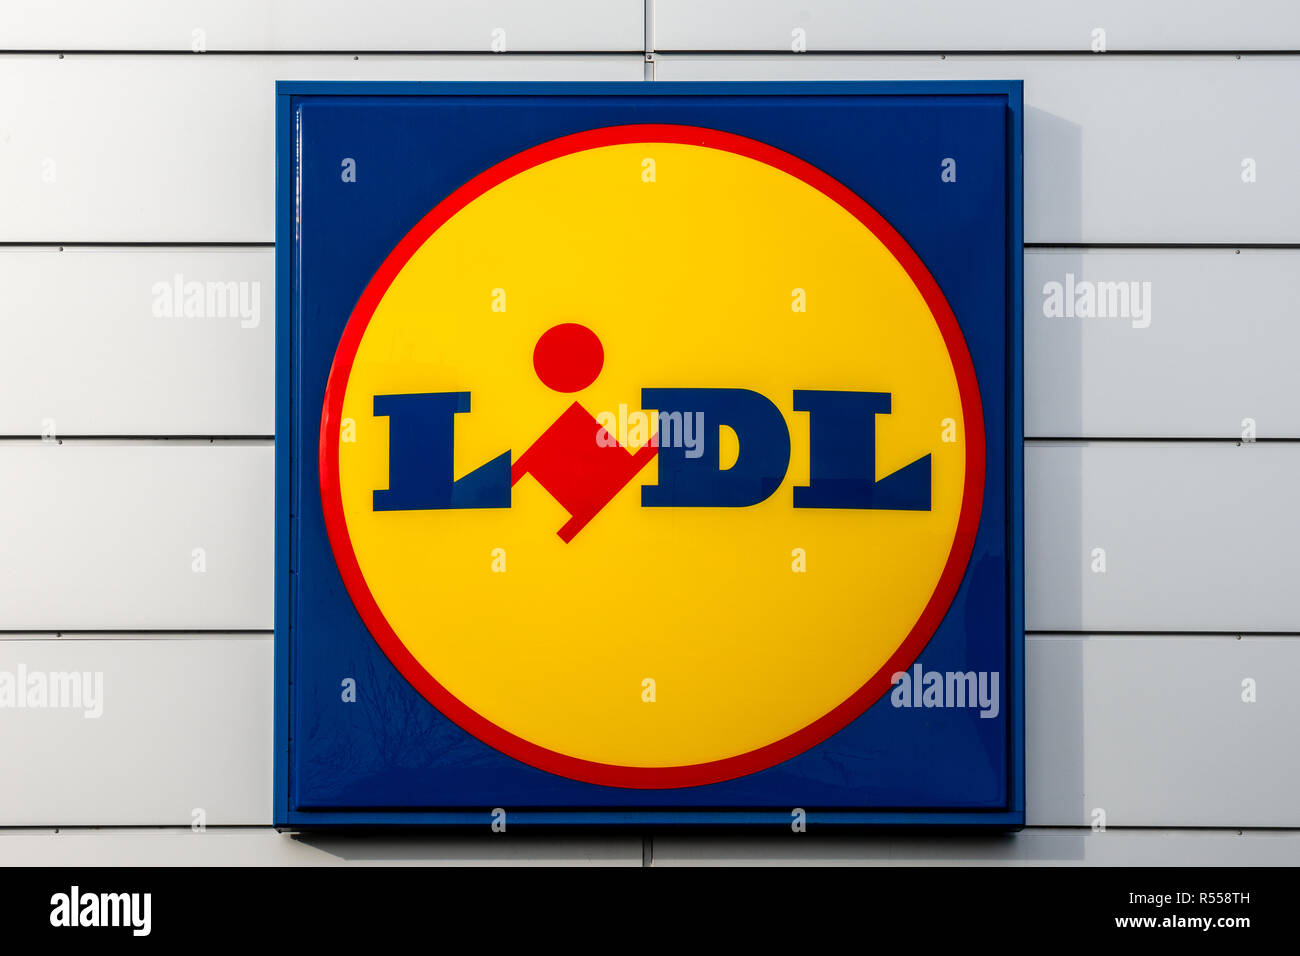 Lidl UK logo sign on shopfront Stock Photo